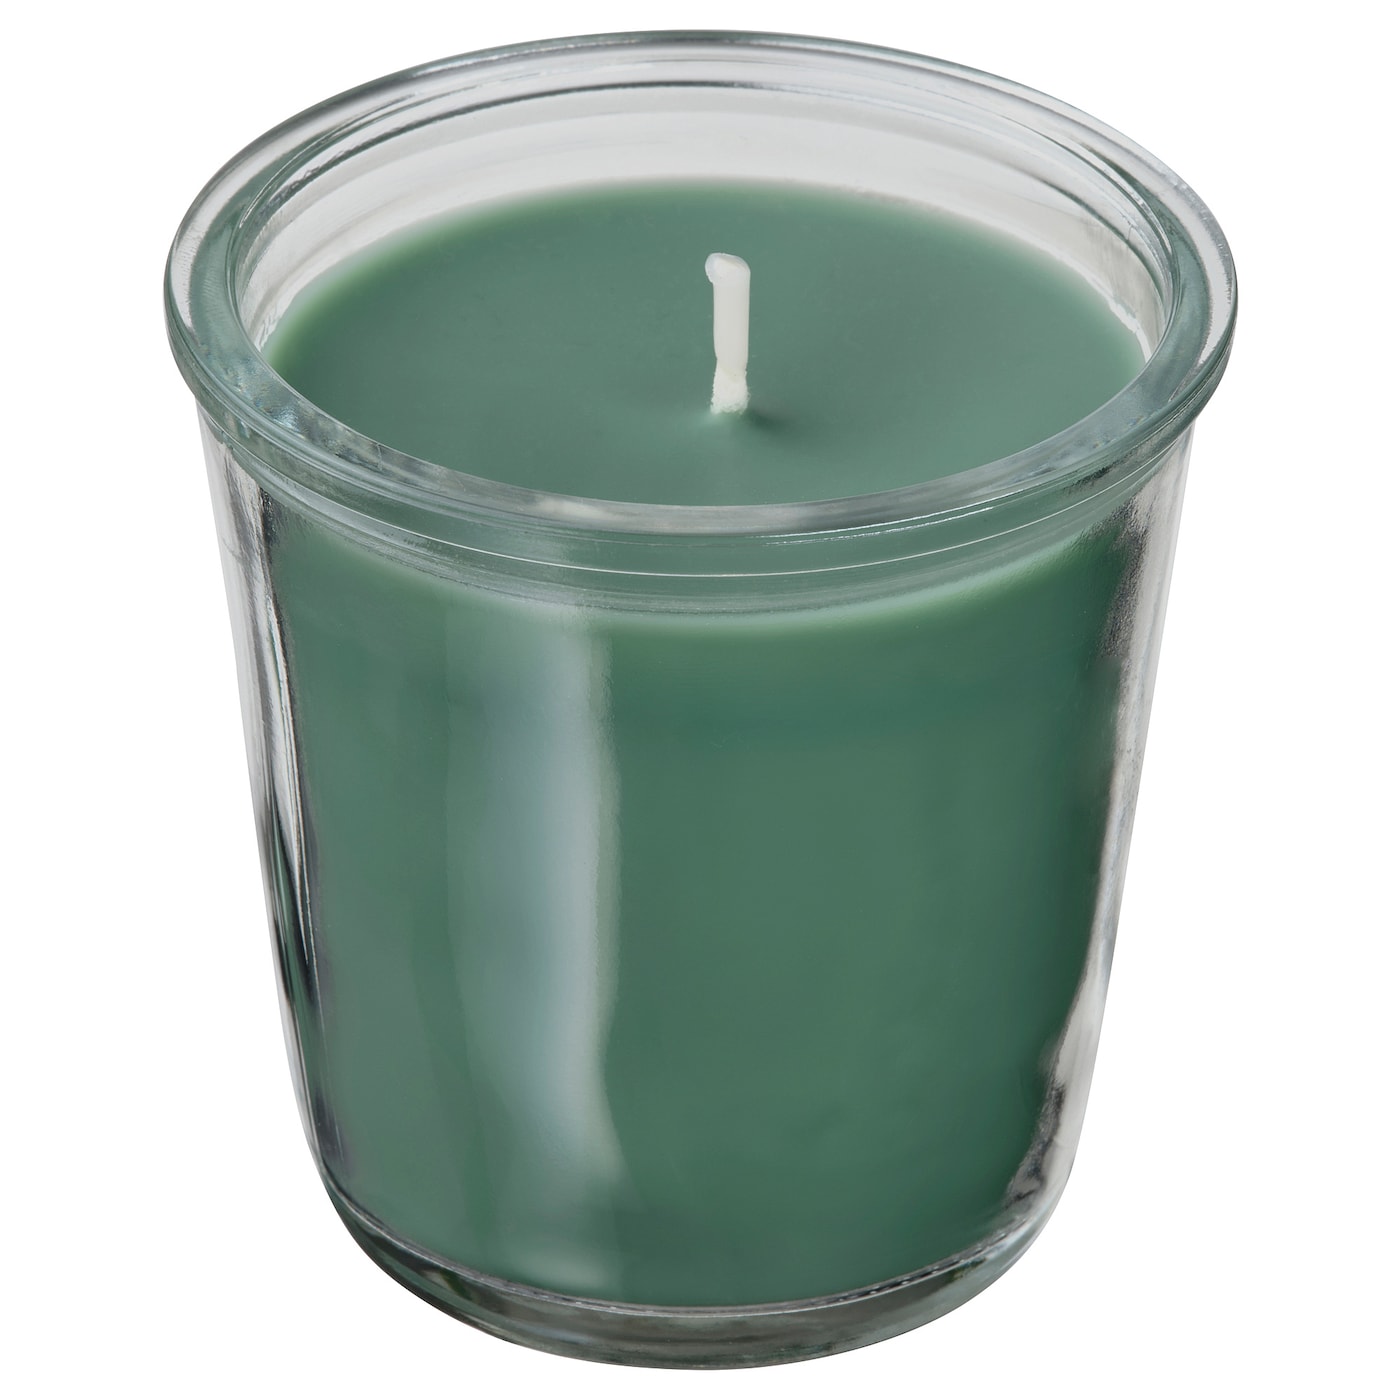 VINTERFINT - świeca zapachowa w szkle sosna i mech/zielony